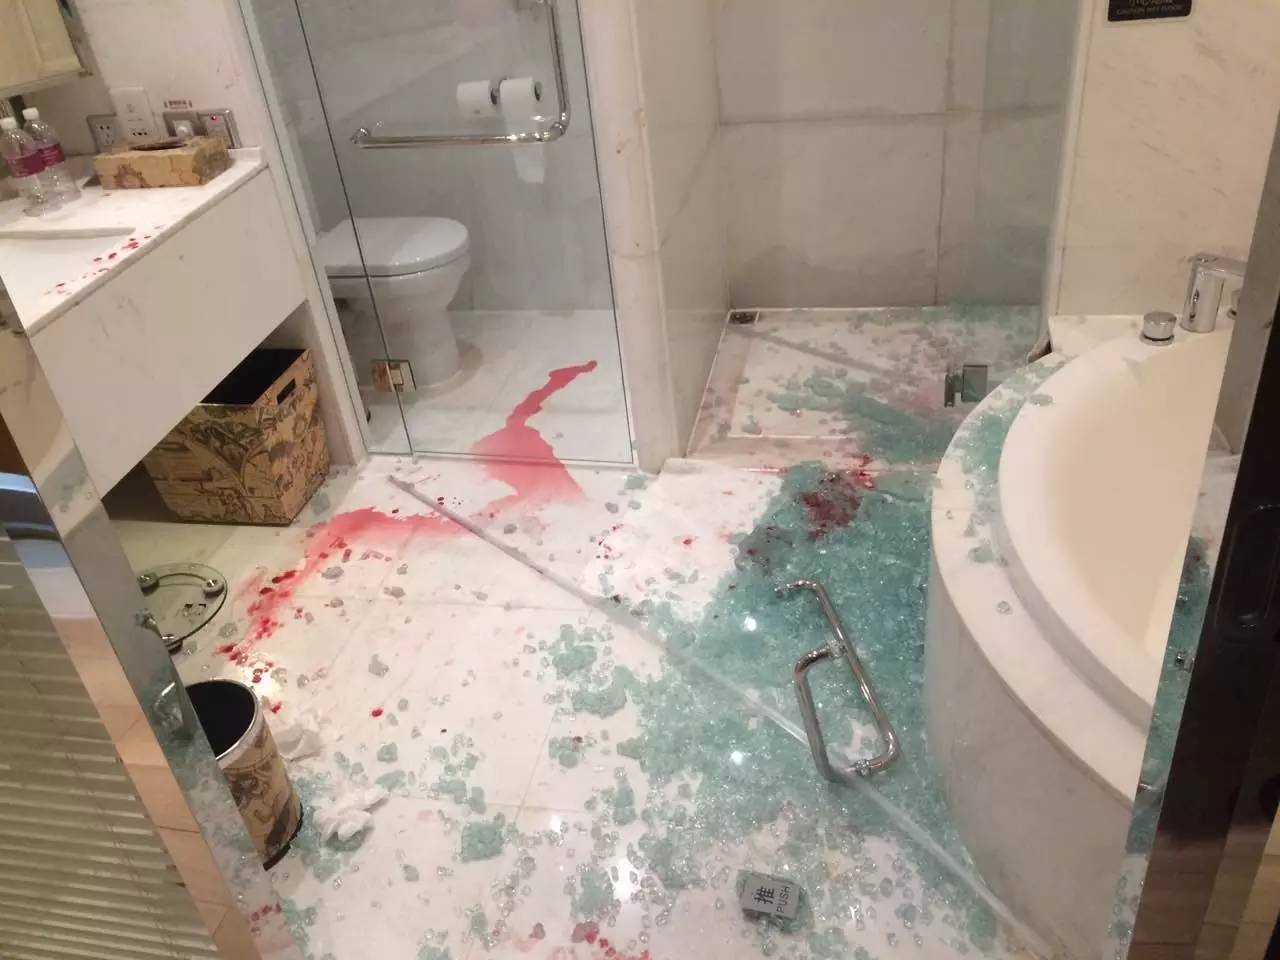 淋浴房玻璃突然炸裂,玻璃碎片伤人场面触目惊心.